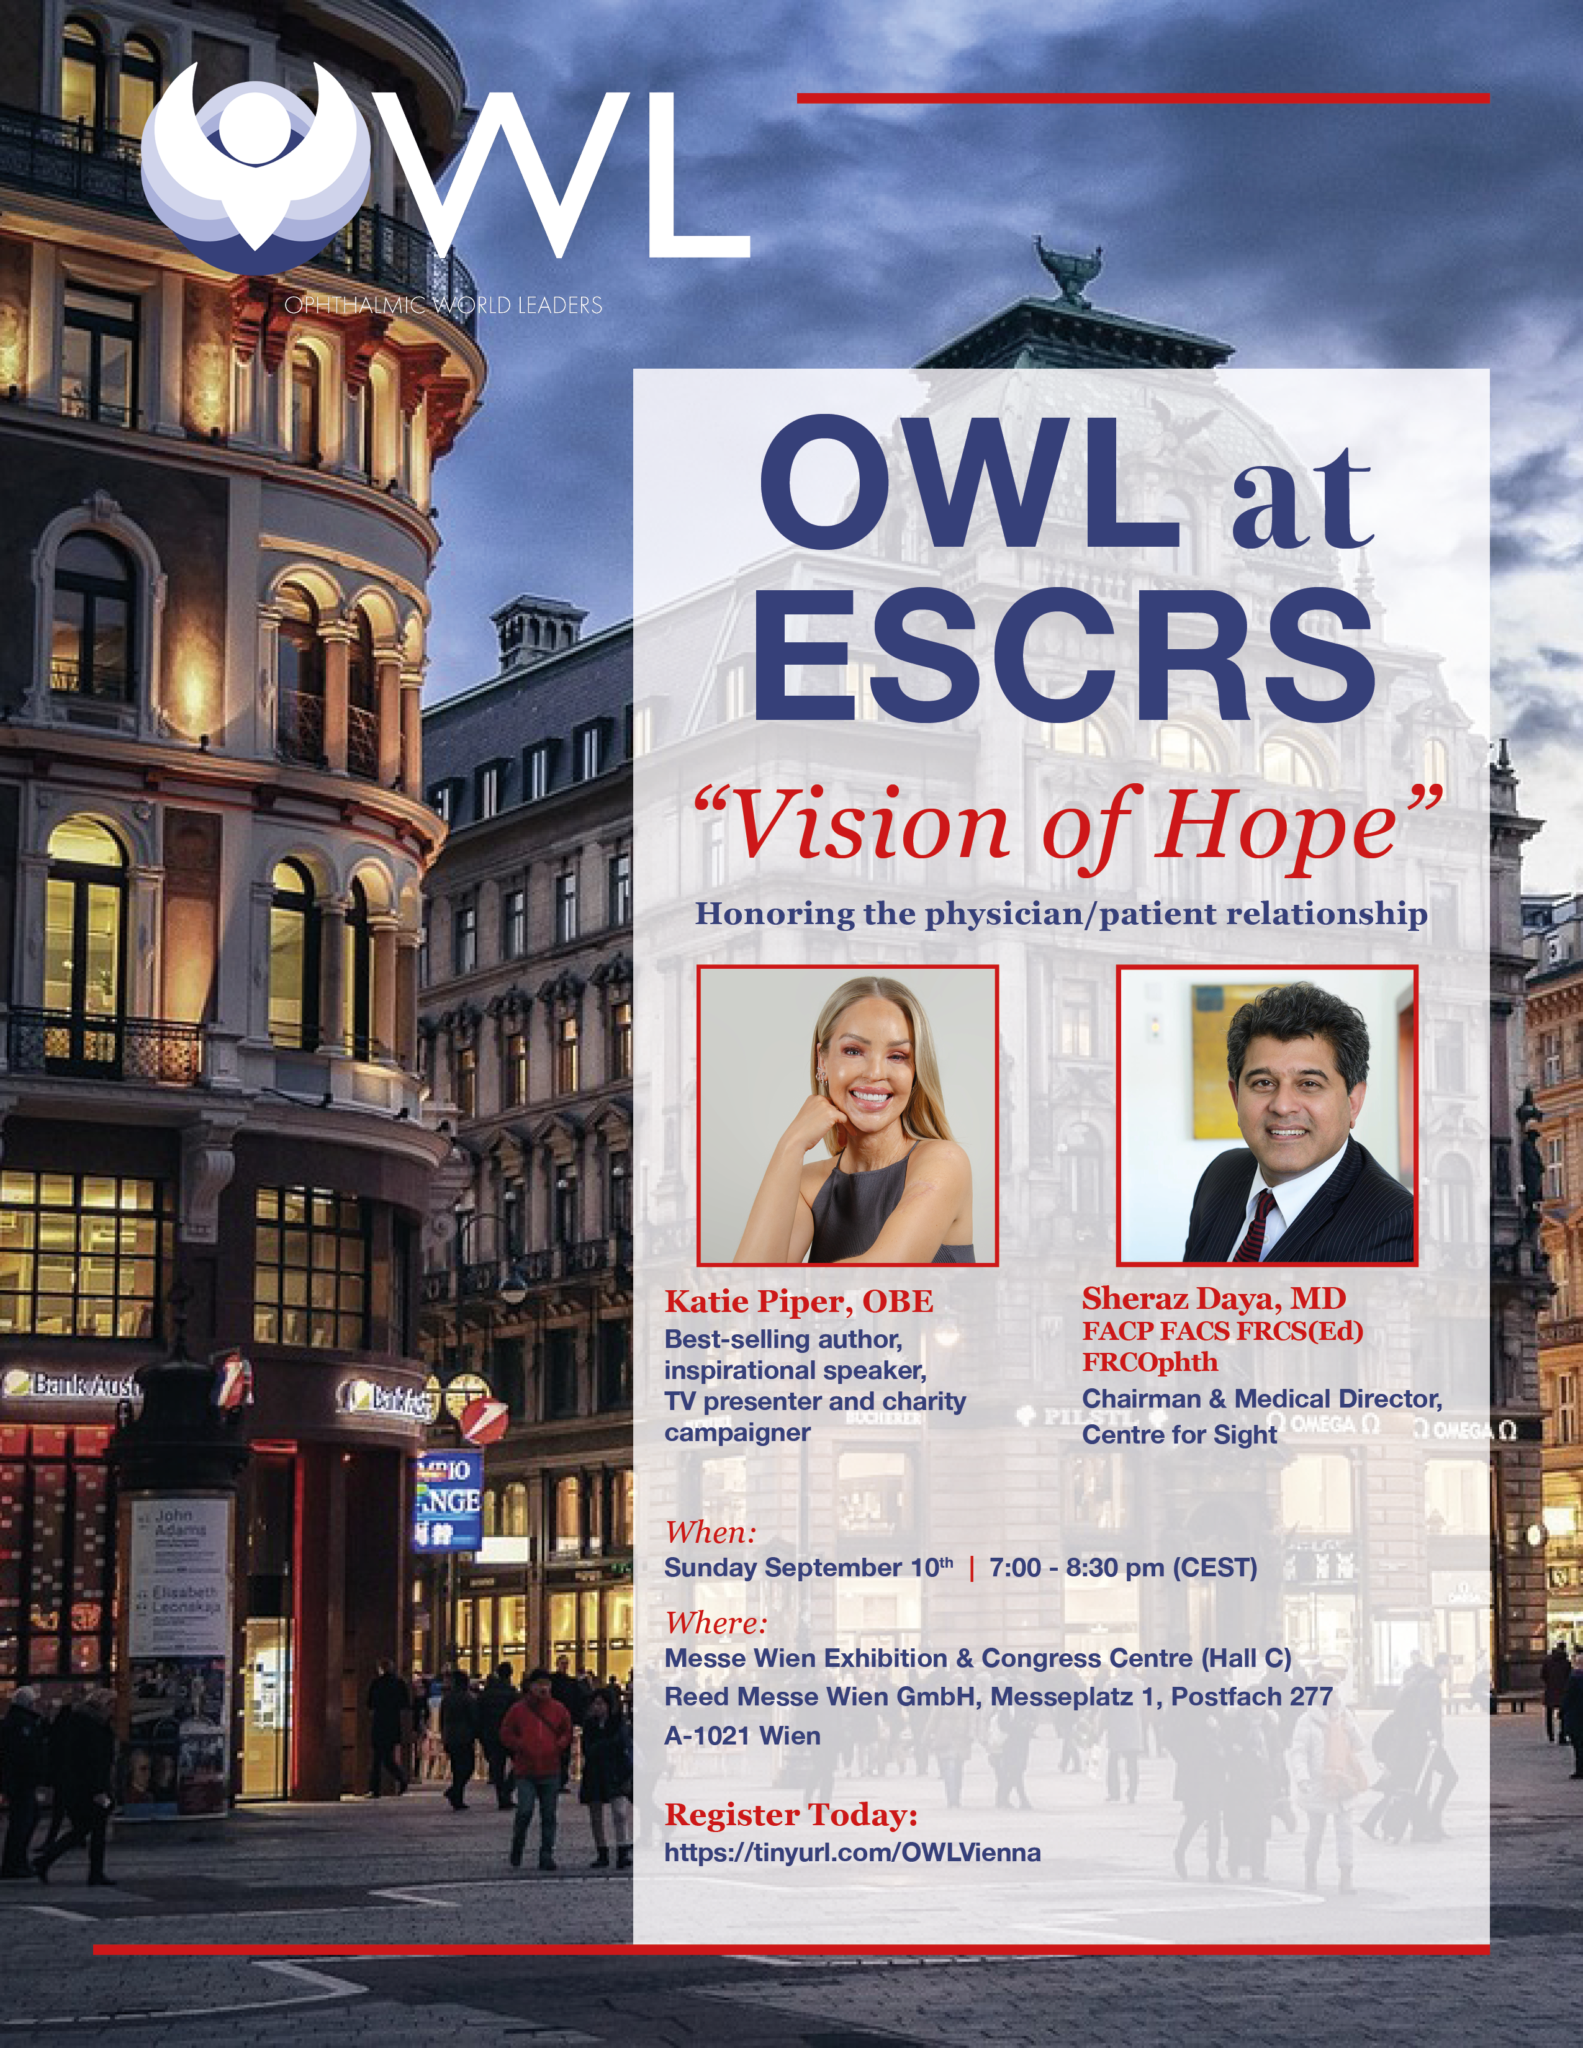 owl escrs event